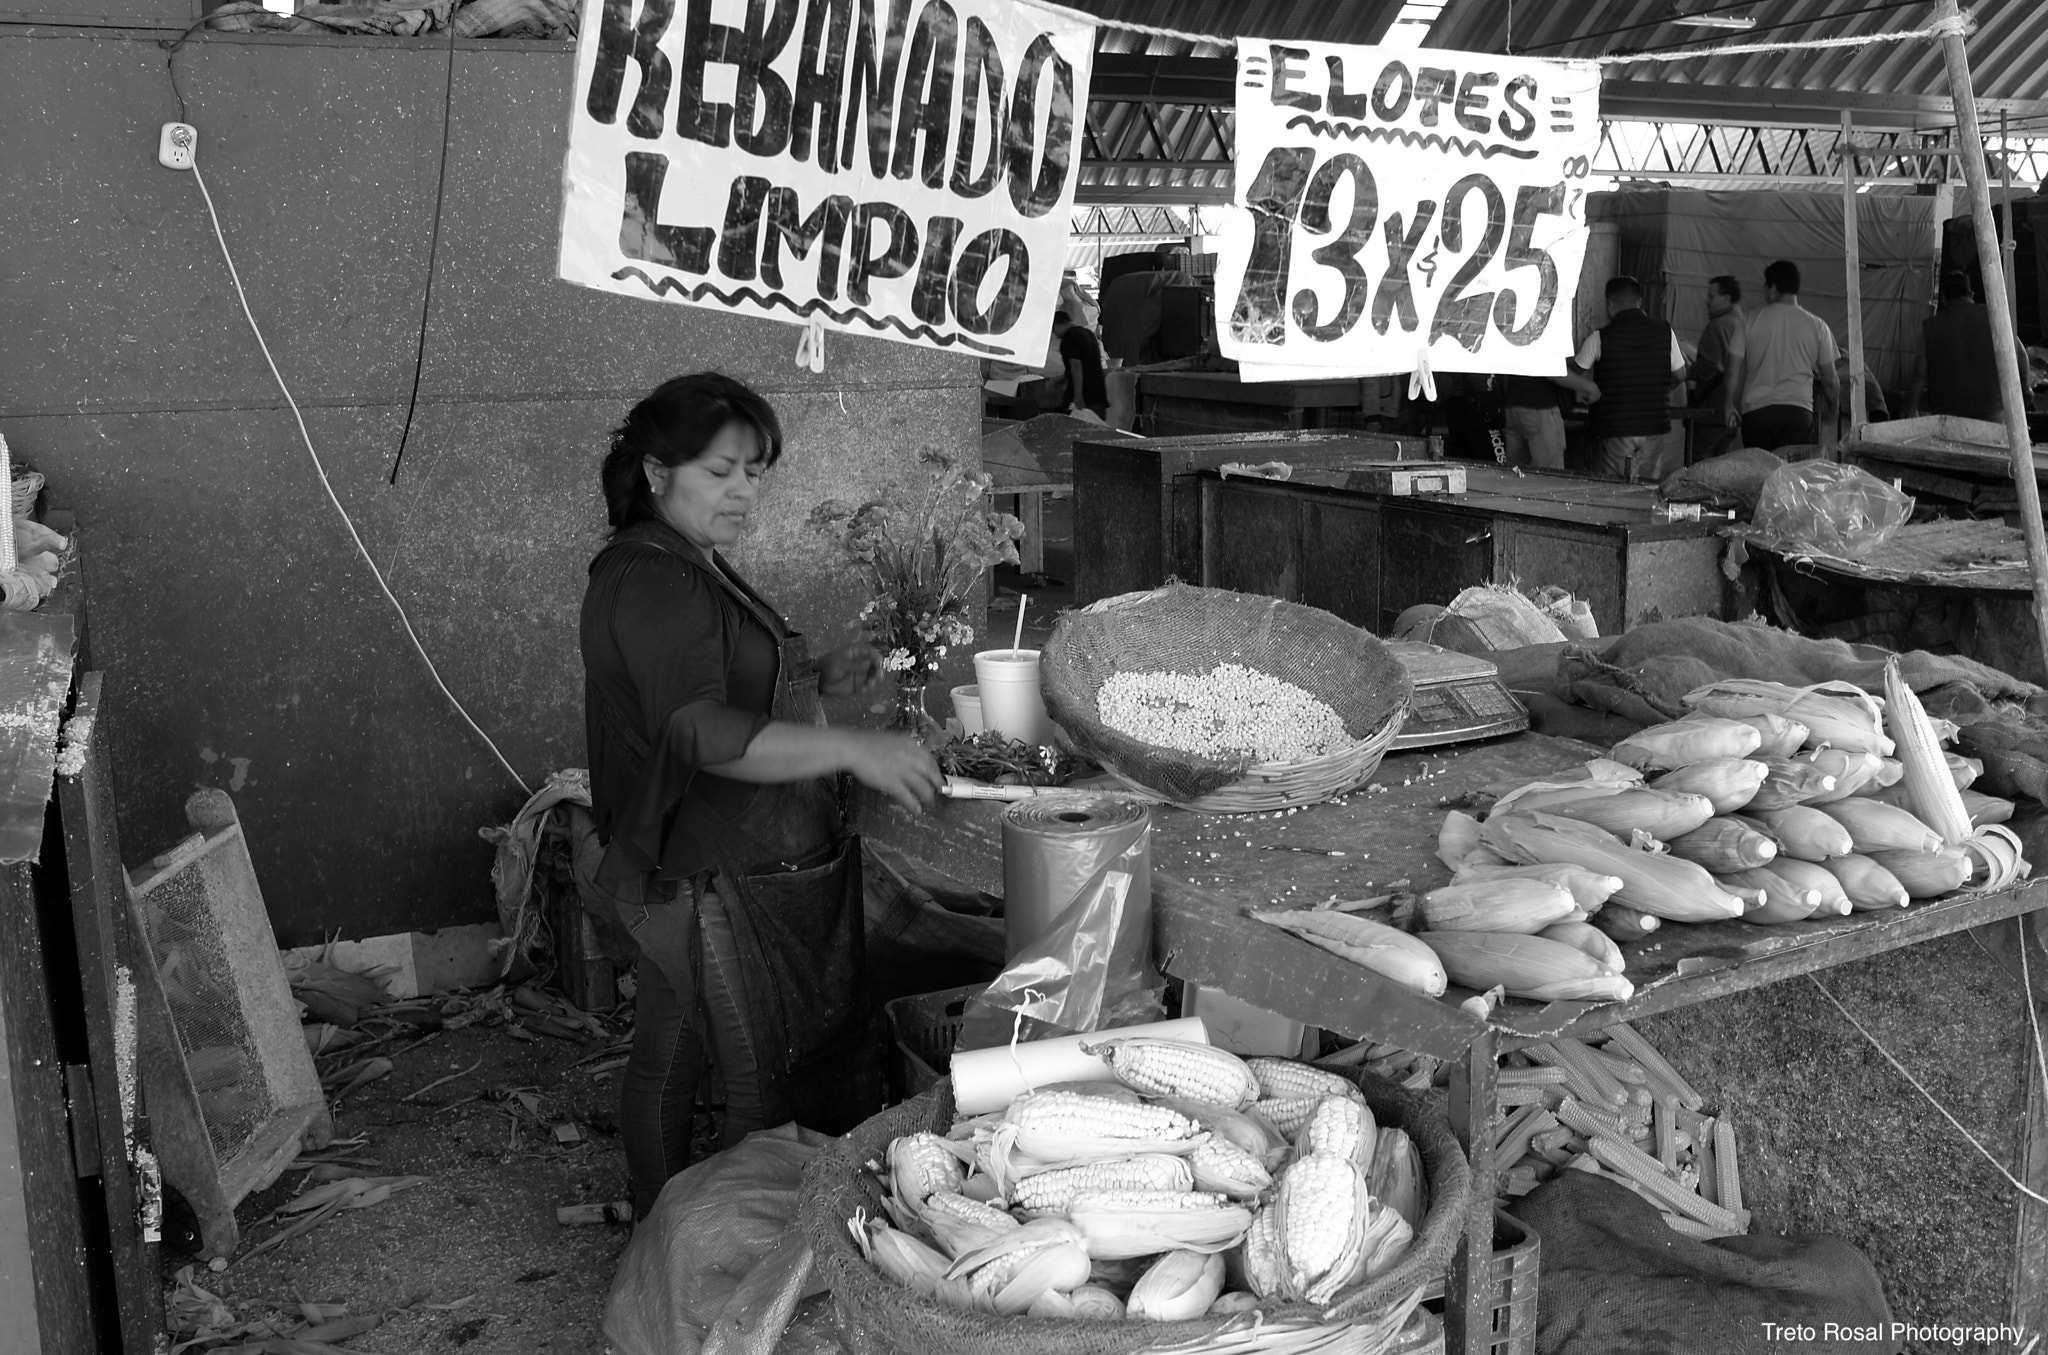 Leica X2 sample photo. Corn trade in mexico photography